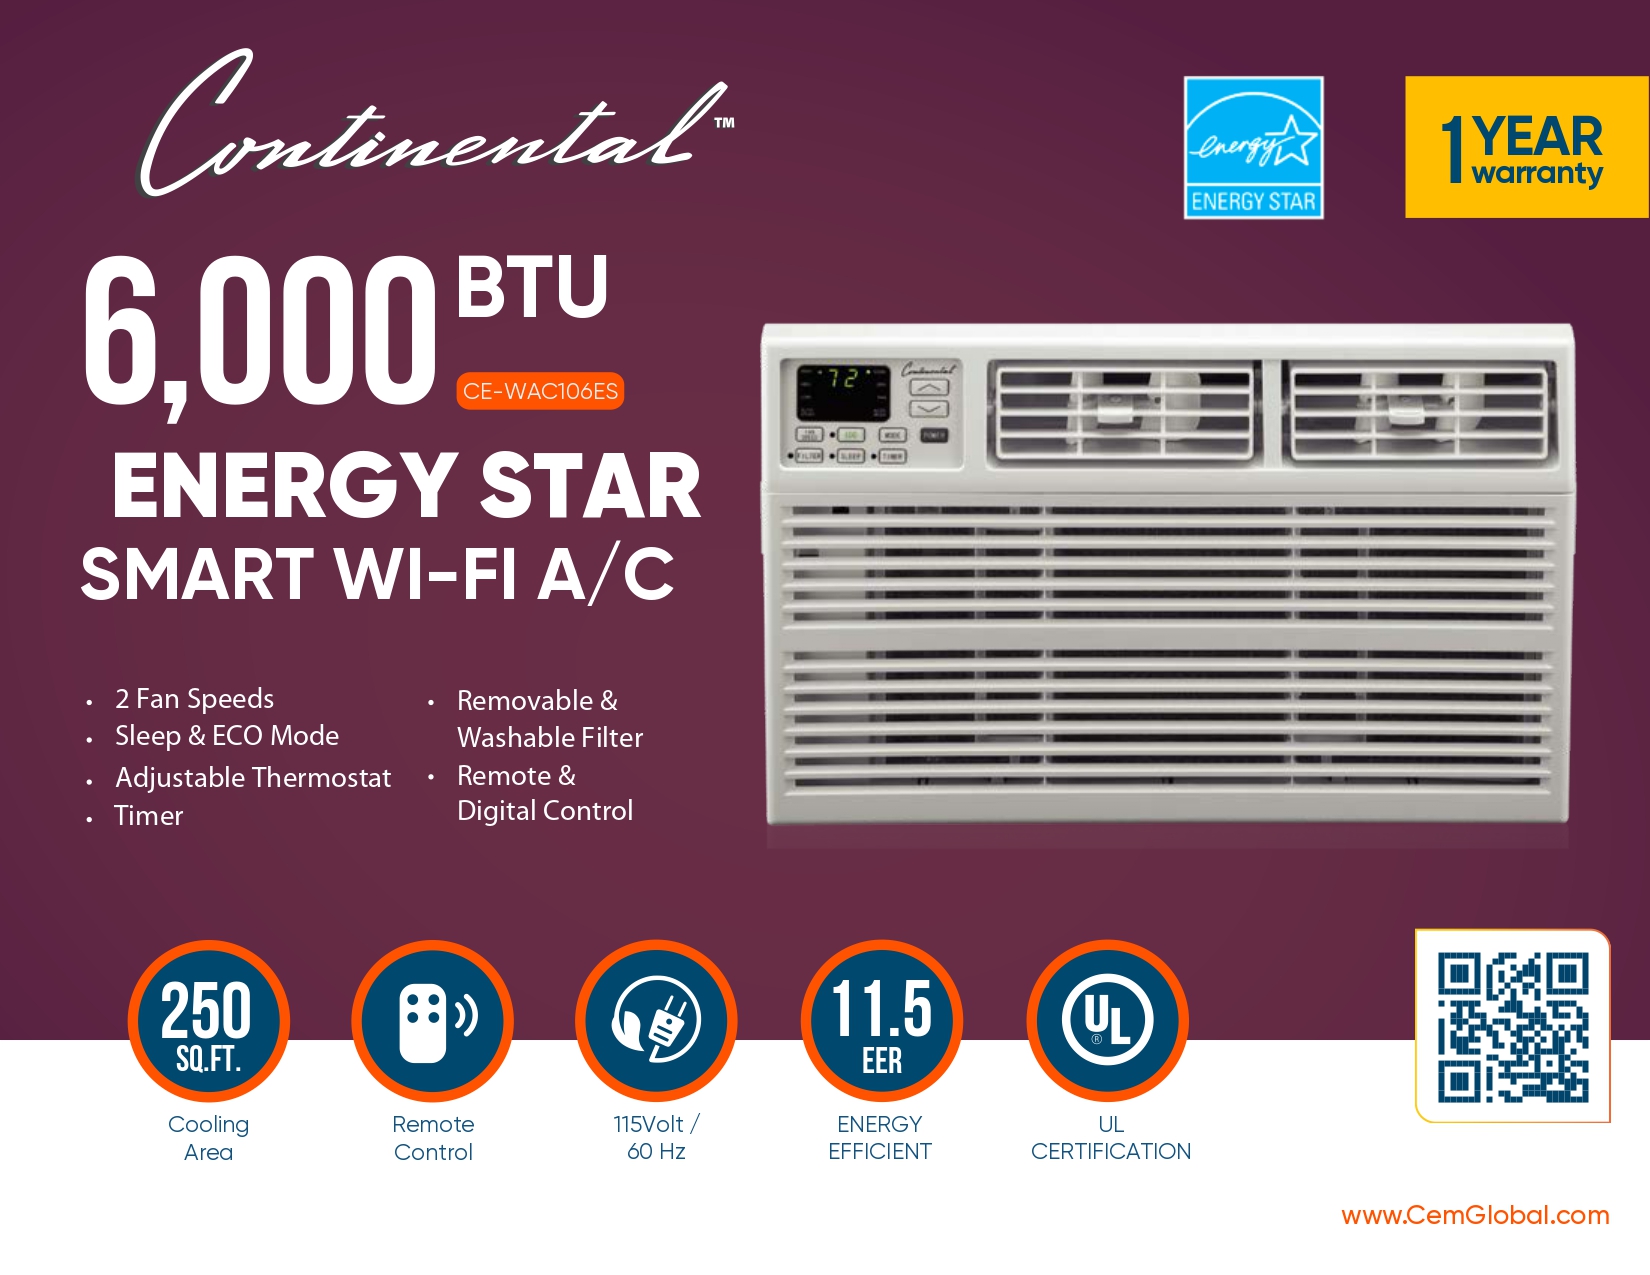 6,000 BTU ENERGY STAR SMART WI-FI A/C